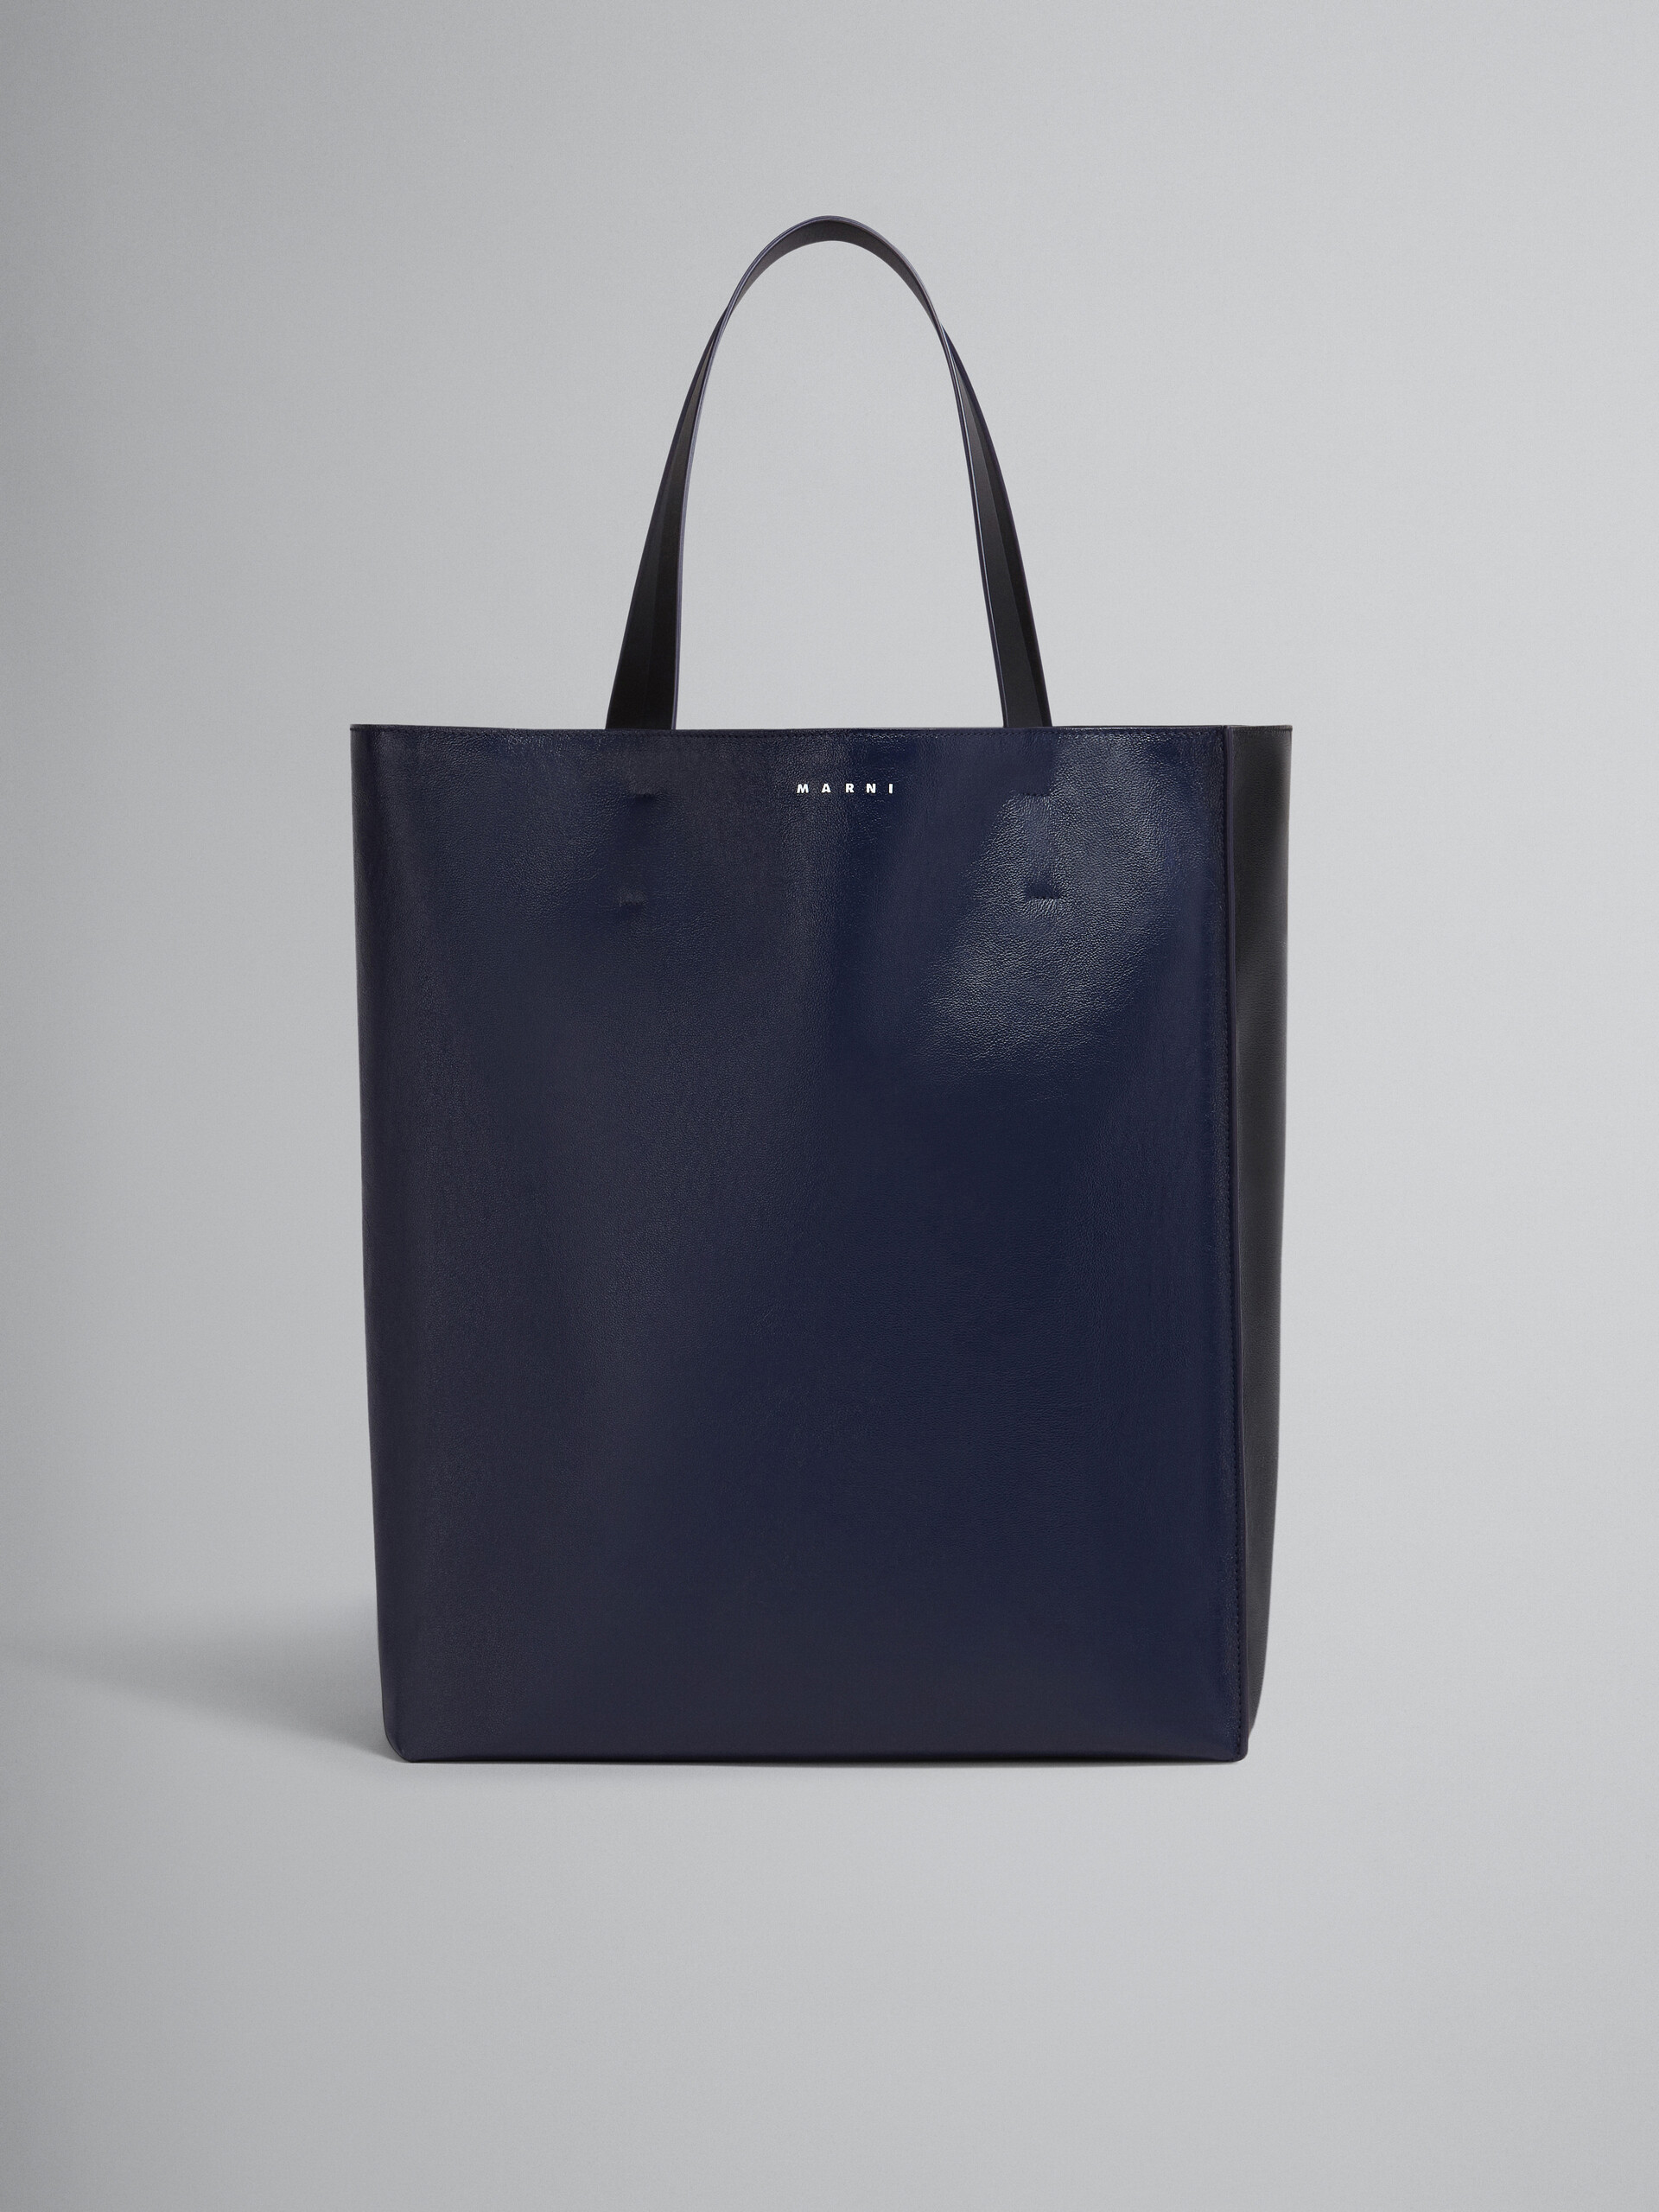 Grand sac Museo Soft en cuir noir et bleu - Sacs cabas - Image 1